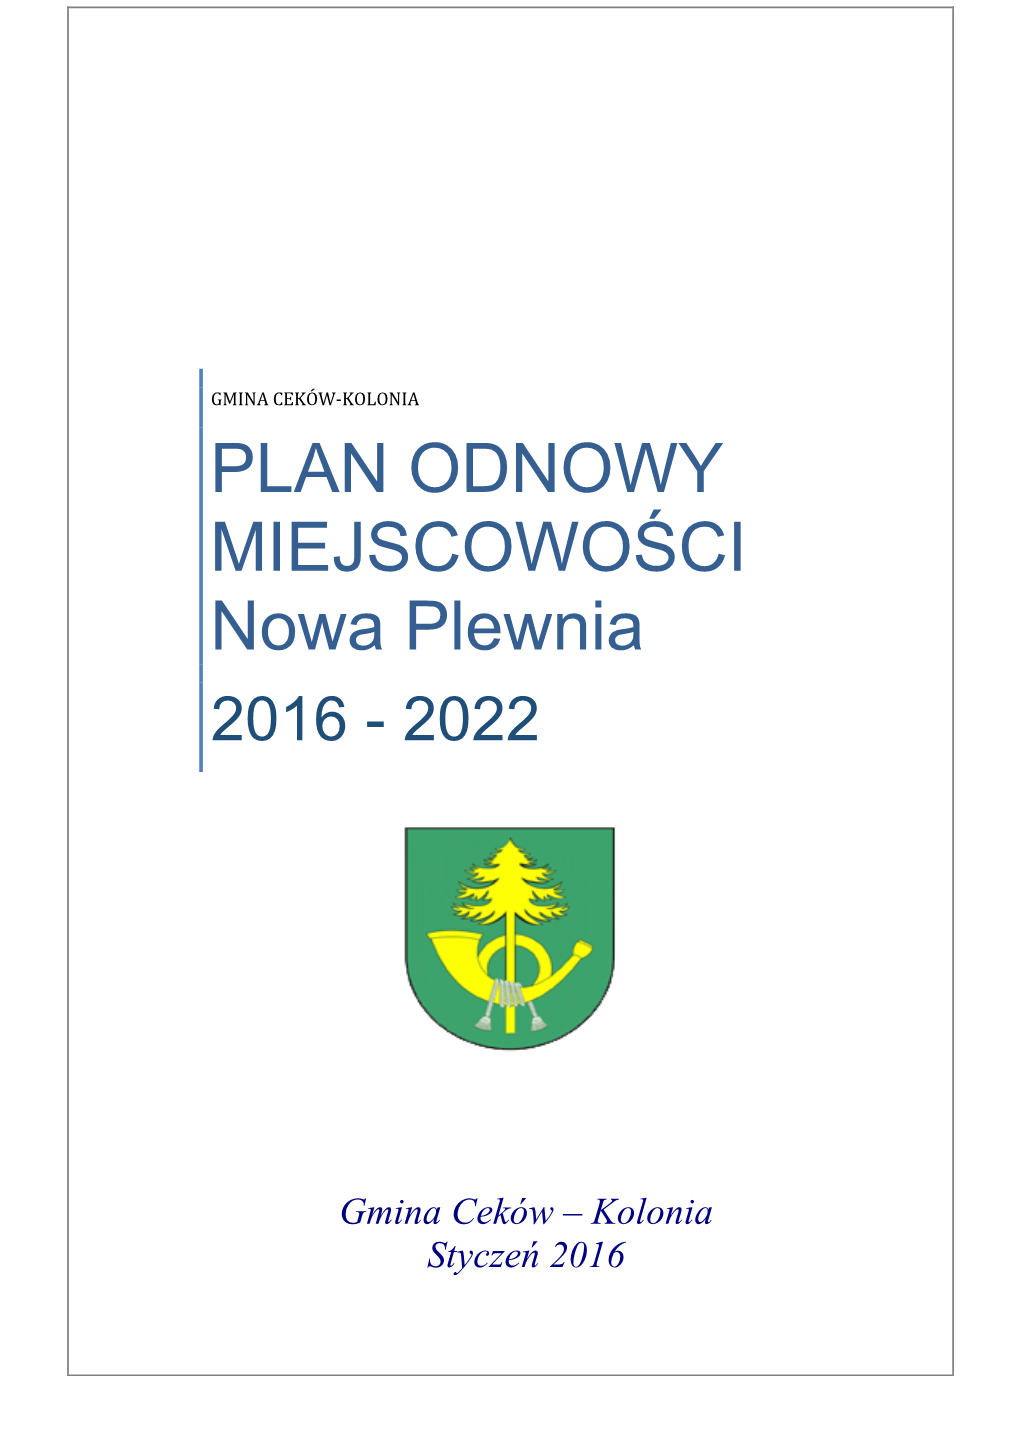 Plan Odnowy Miejscowości Nowa Plewnia Jest Harmonogramem Inwestycji I Działań Zaplanowanych Na Lata 2016-2022